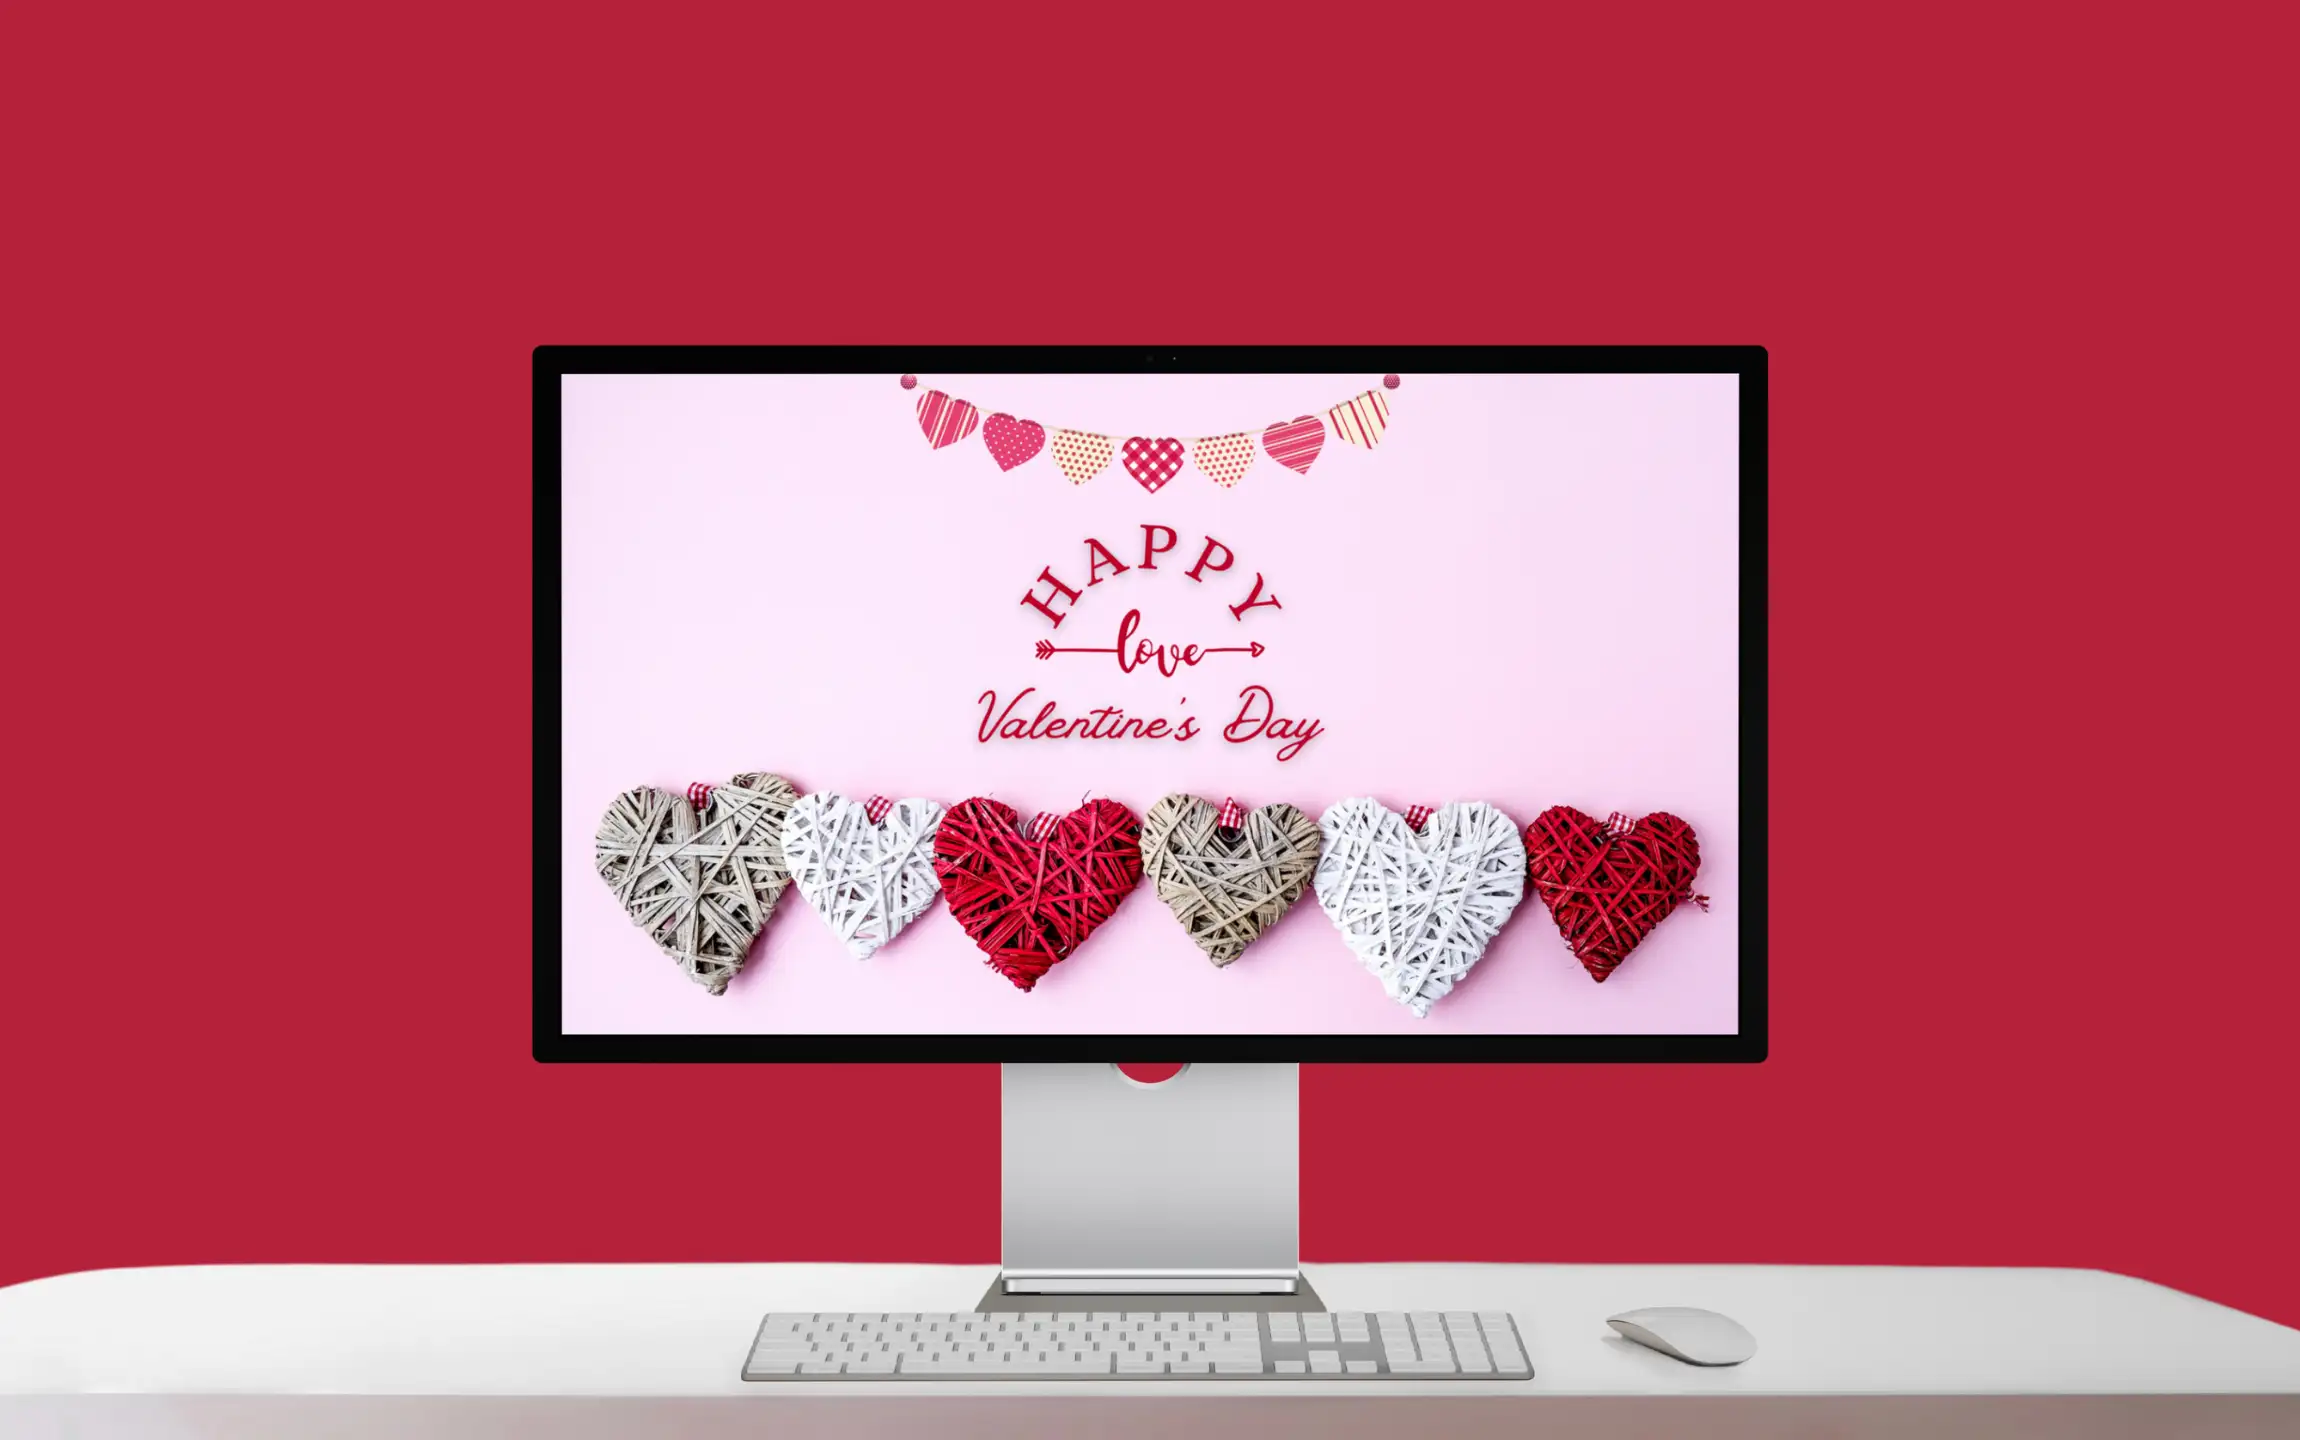 Aesthetic Valentines Day Wallpaper for Desktop